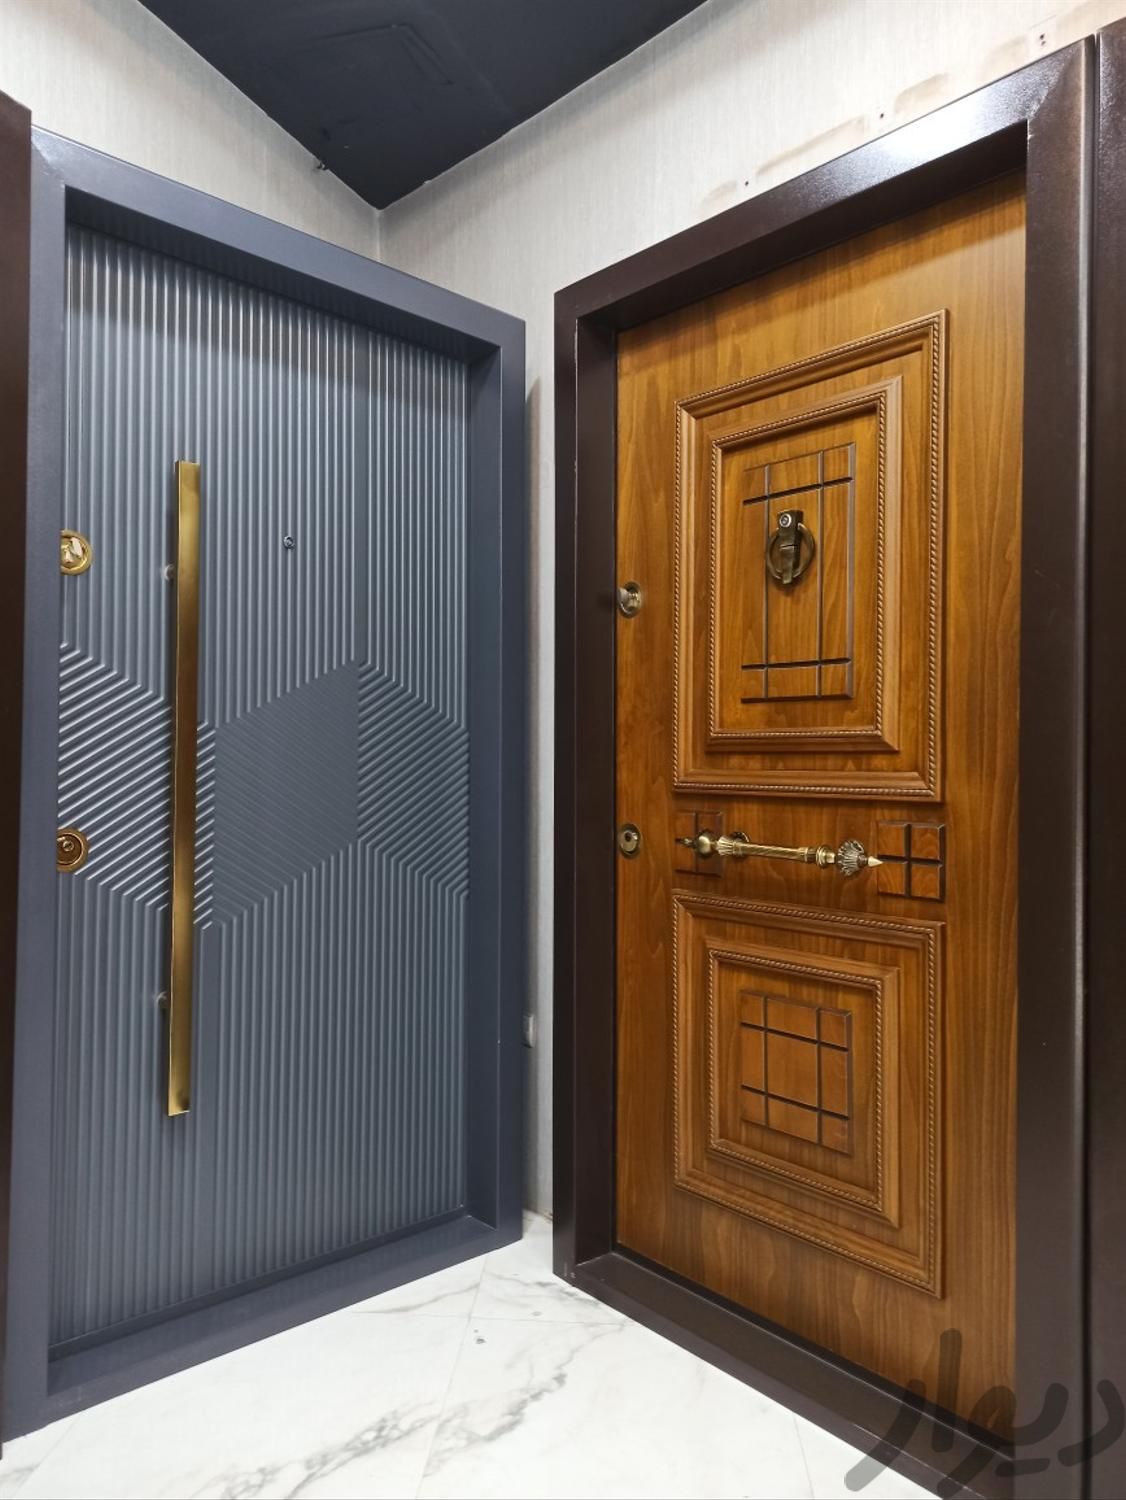 درب ضد سرقت زد سرقت ضدسرقت زدسرقت چوبی اتاقی|مصالح و تجهیزات ساختمان|تهران, صادقیه|دیوار